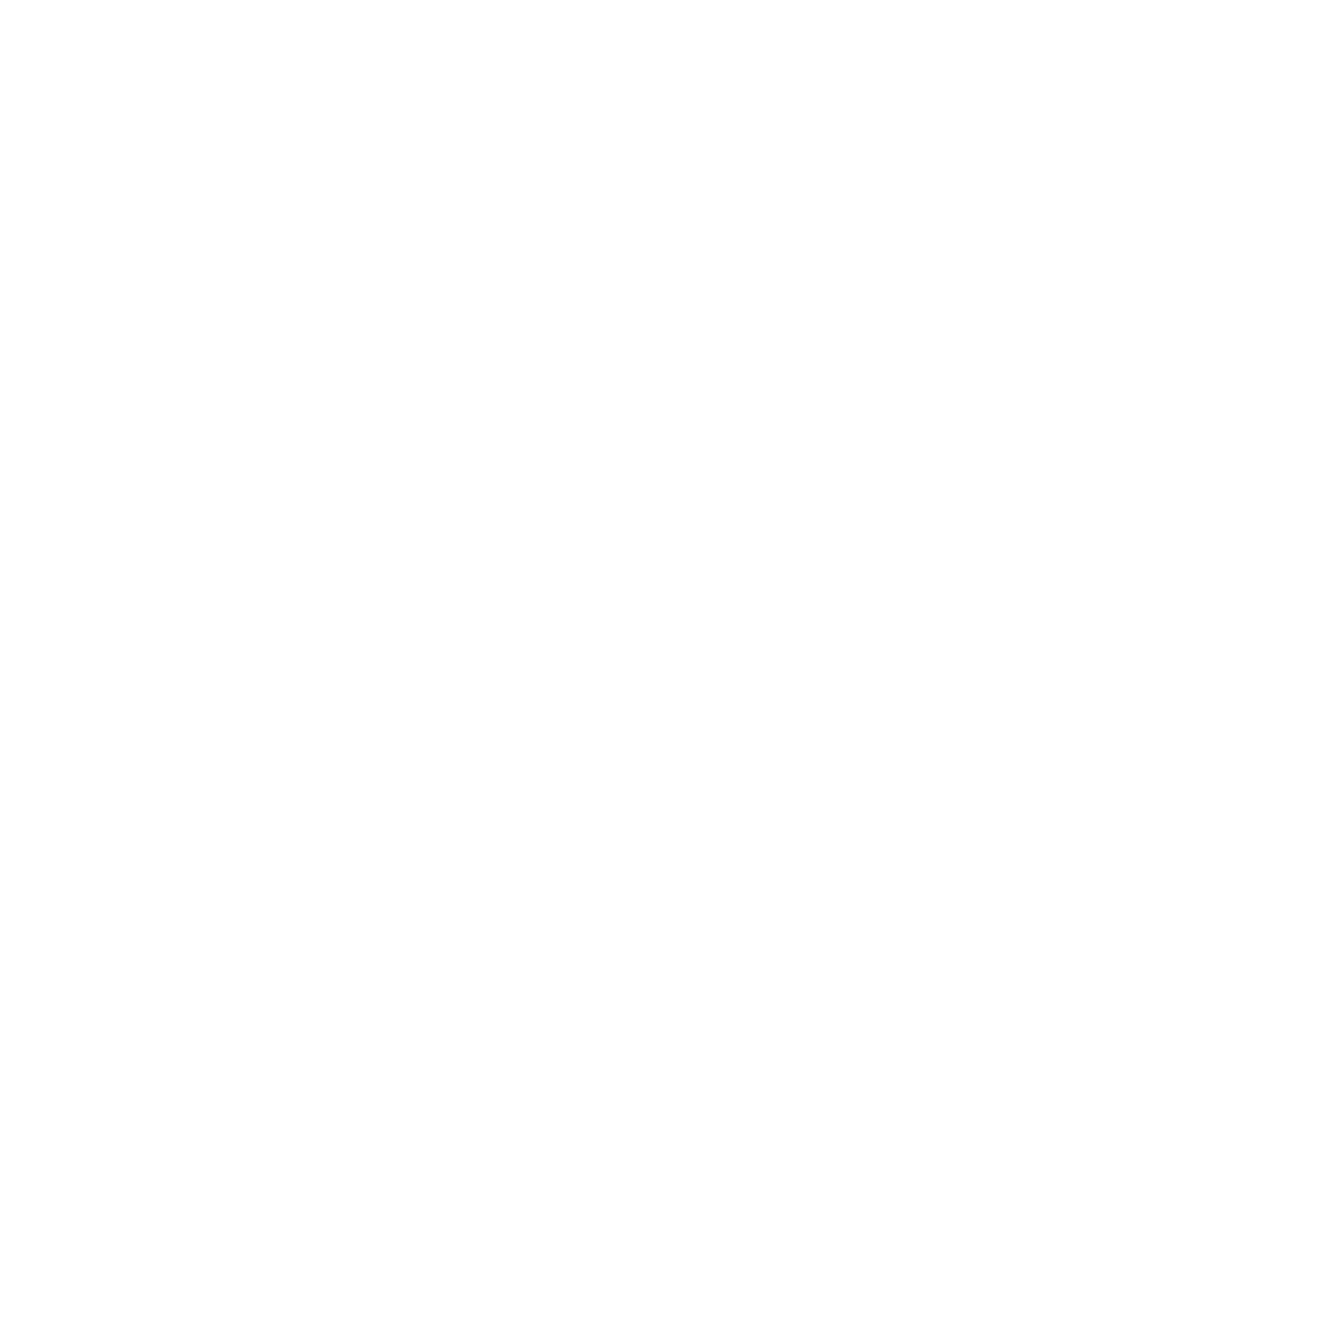 Exin-certification